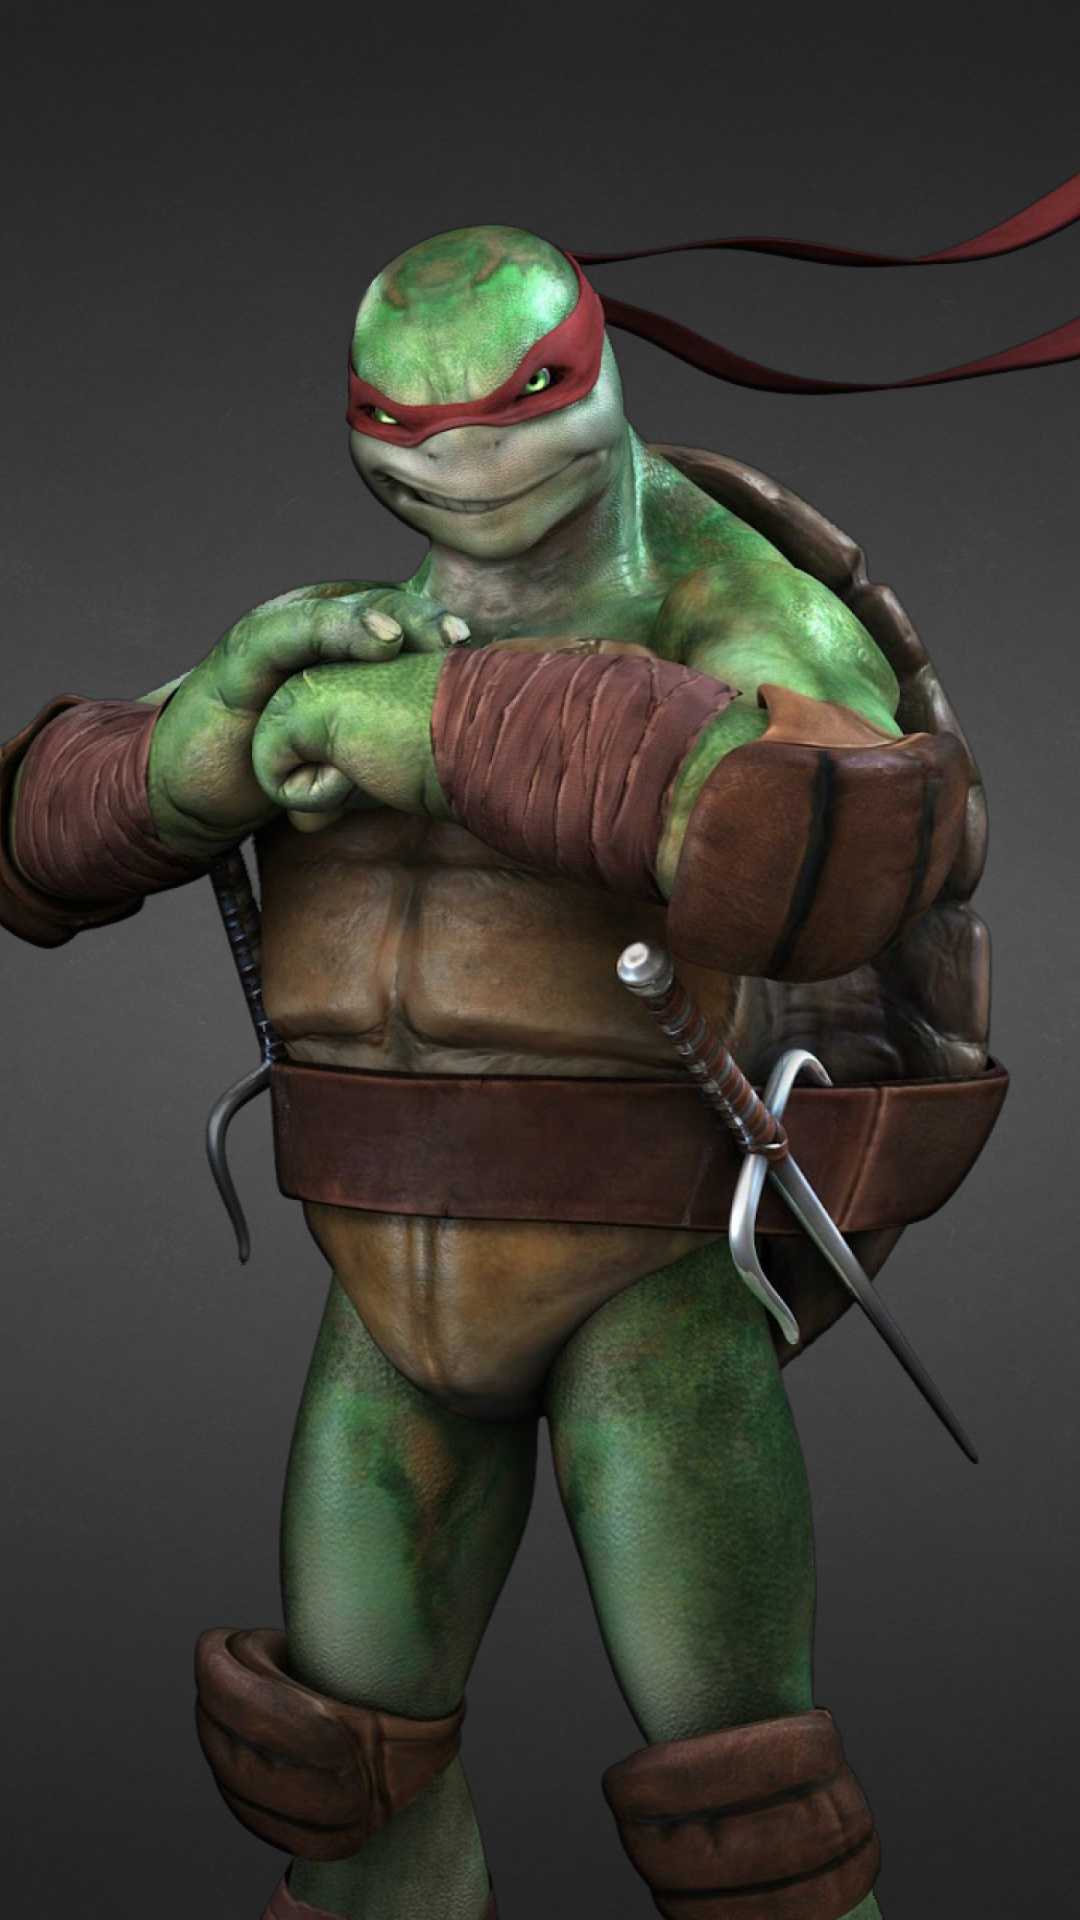 Raphael - Teenage Mutant inja Turtles wallpaper 1080x1920